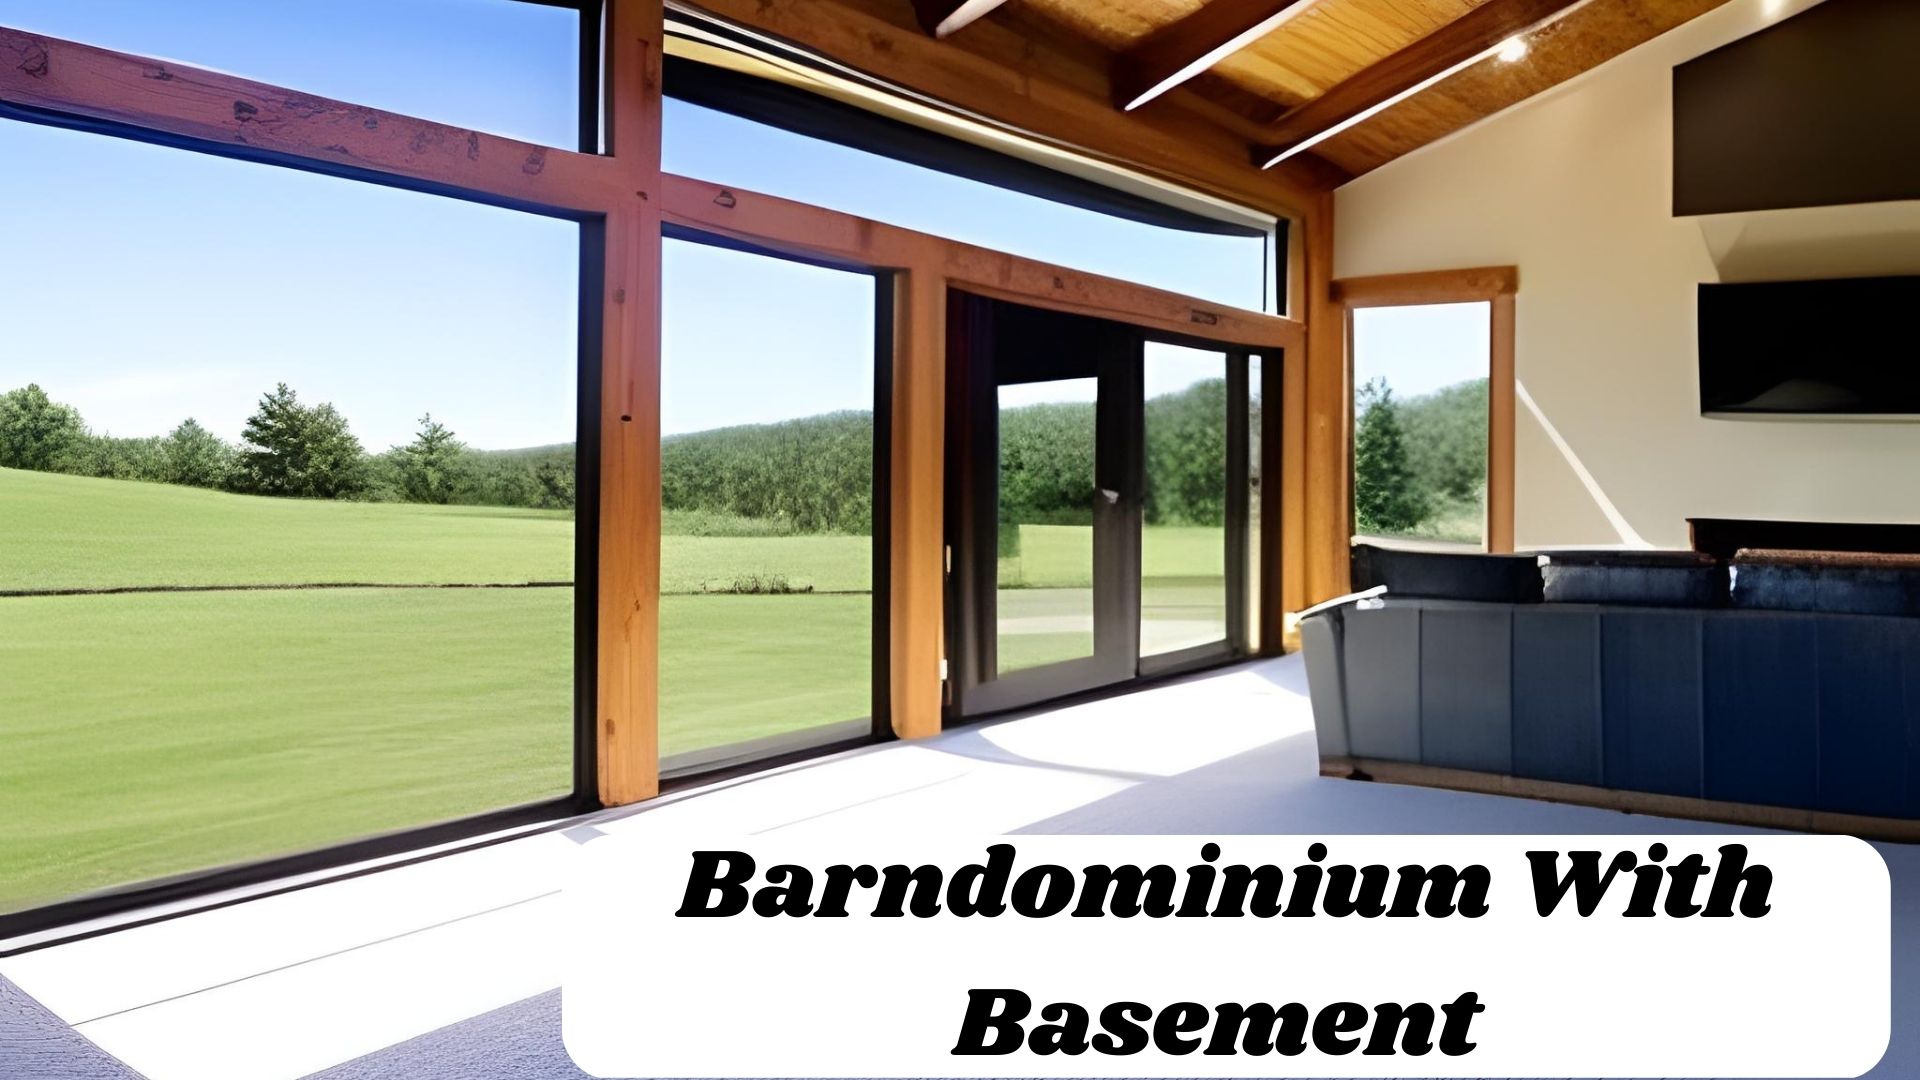 Barndominium With Basement